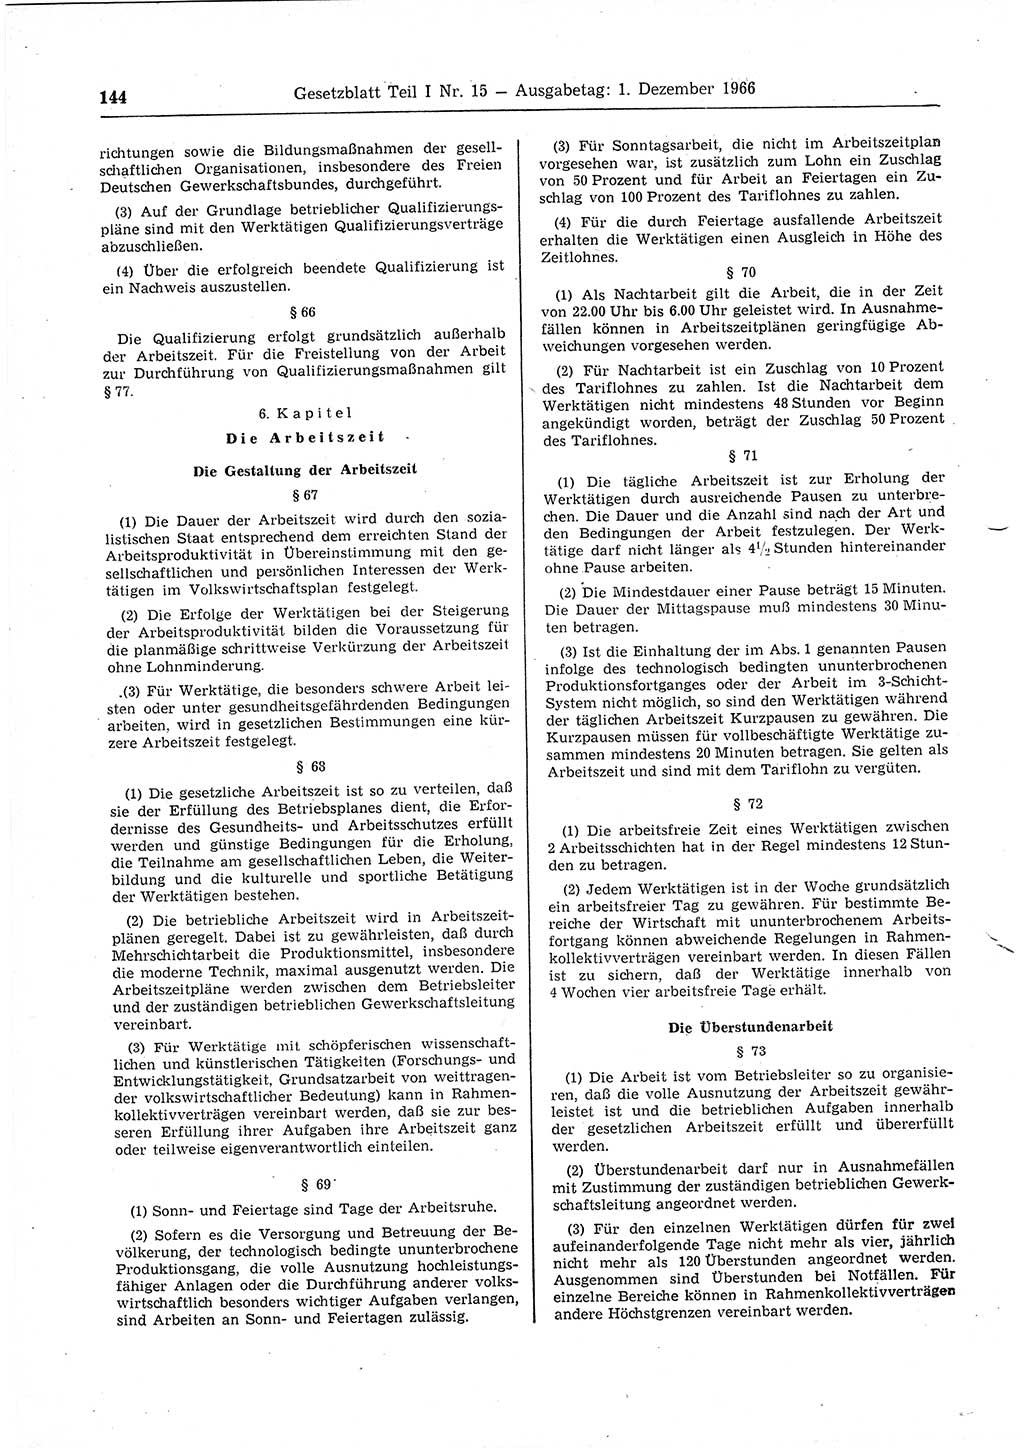 Gesetzblatt (GBl.) der Deutschen Demokratischen Republik (DDR) Teil Ⅰ 1966, Seite 144 (GBl. DDR Ⅰ 1966, S. 144)